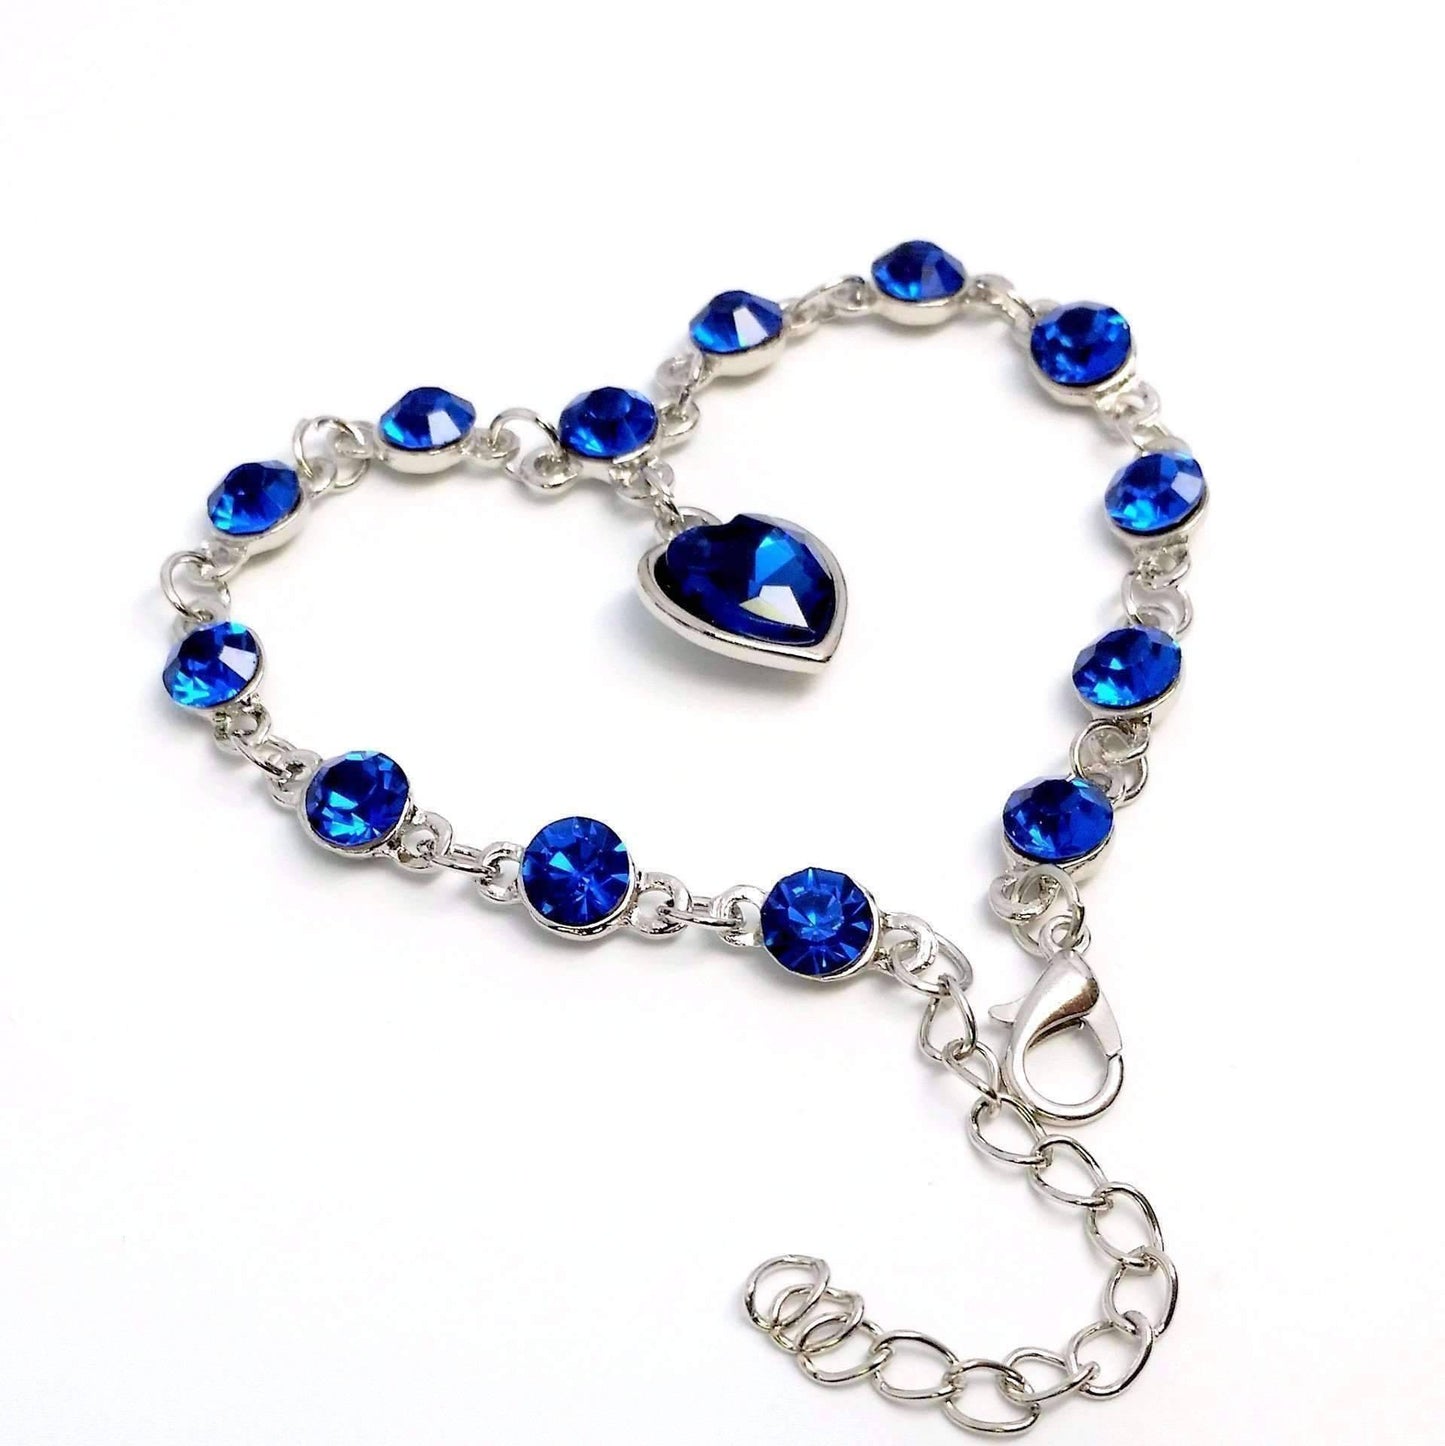 Feshionn IOBI bracelets Linked Forever Crystal Heart Charm Bracelet - Sapphire Blue